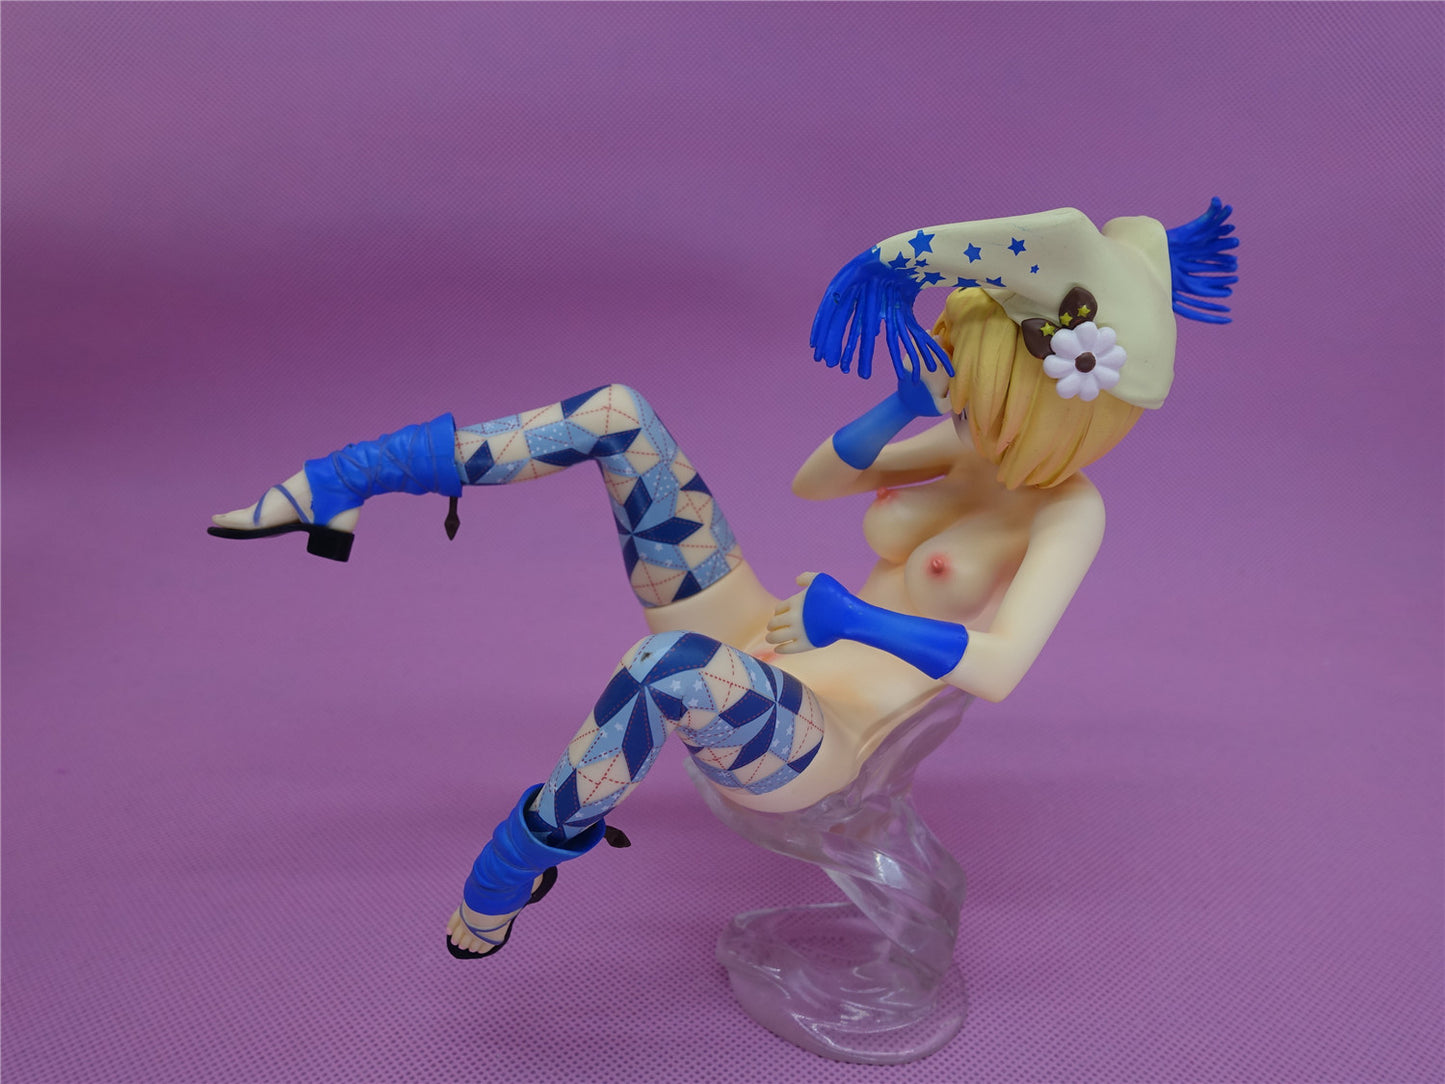 Brilliant Stars - Ririka 1/6 anime girl figure naked anime figures